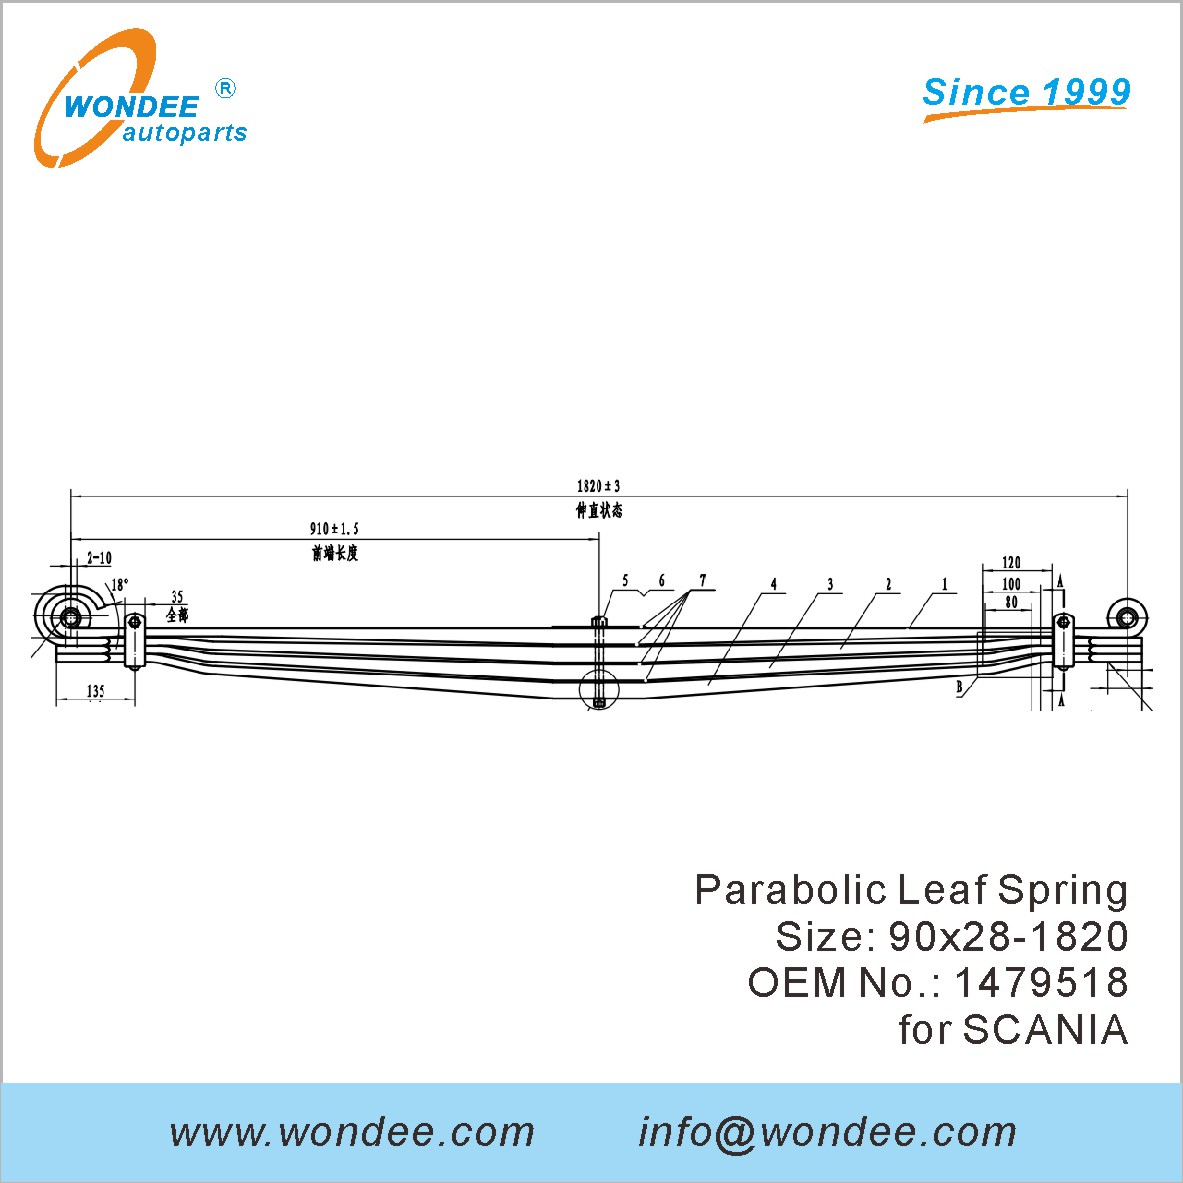 WONDEE heavy duty parabolic Leaf Spring OEM 1479518 for SCANIA